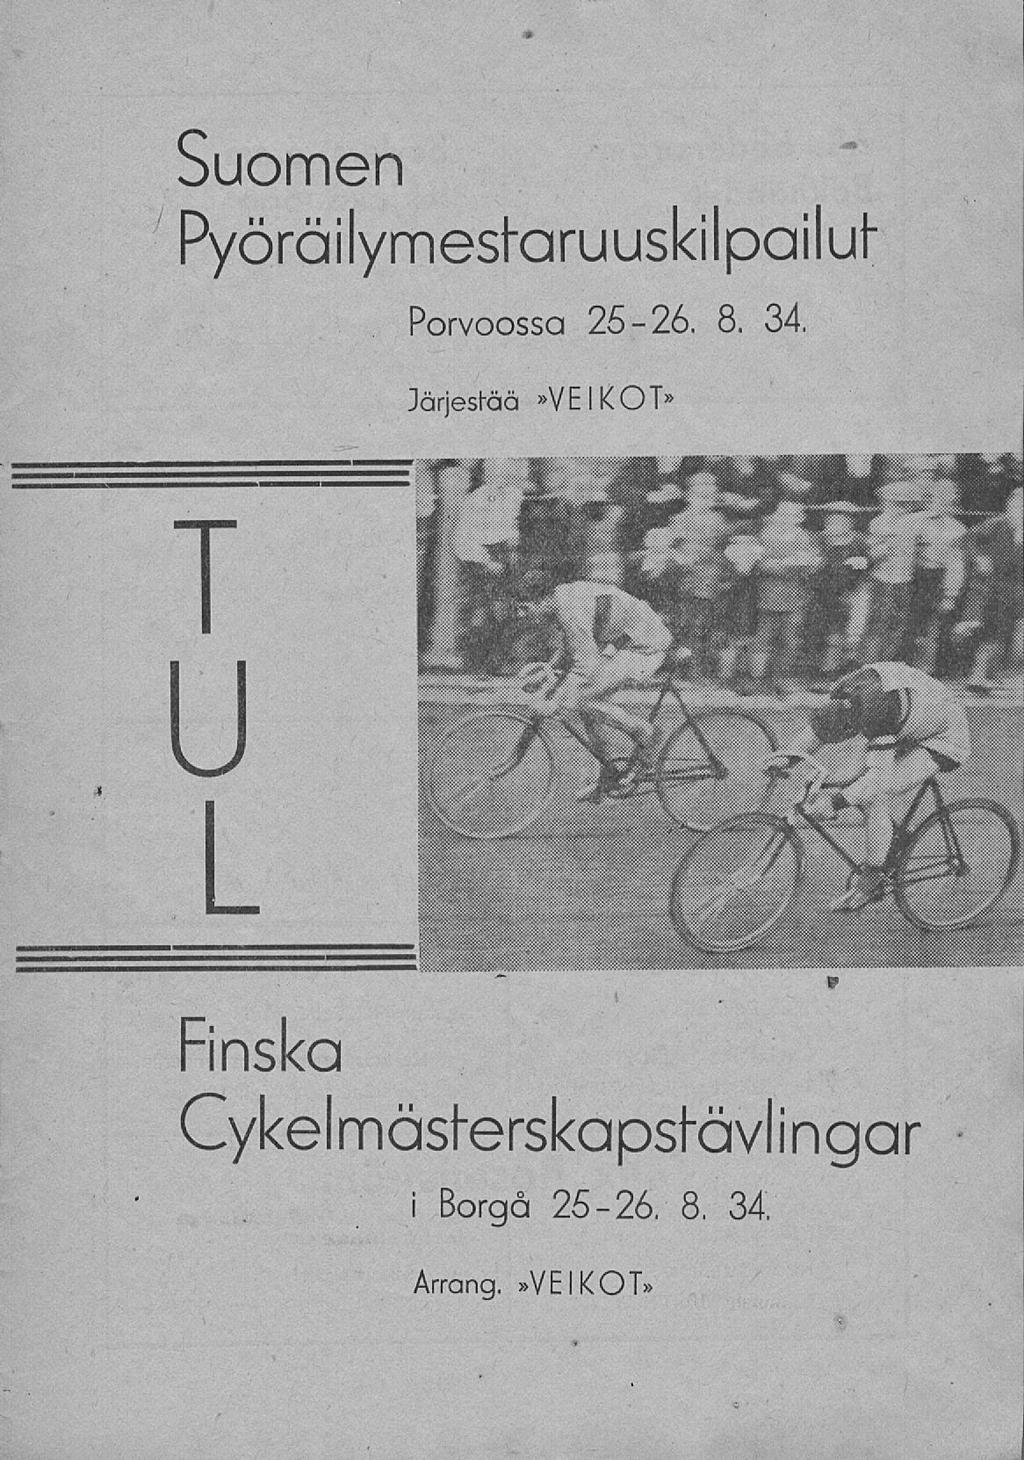 Suomen Pyöräilymestaruuskilpailul" Porvoossa 25-26. 8. 34.